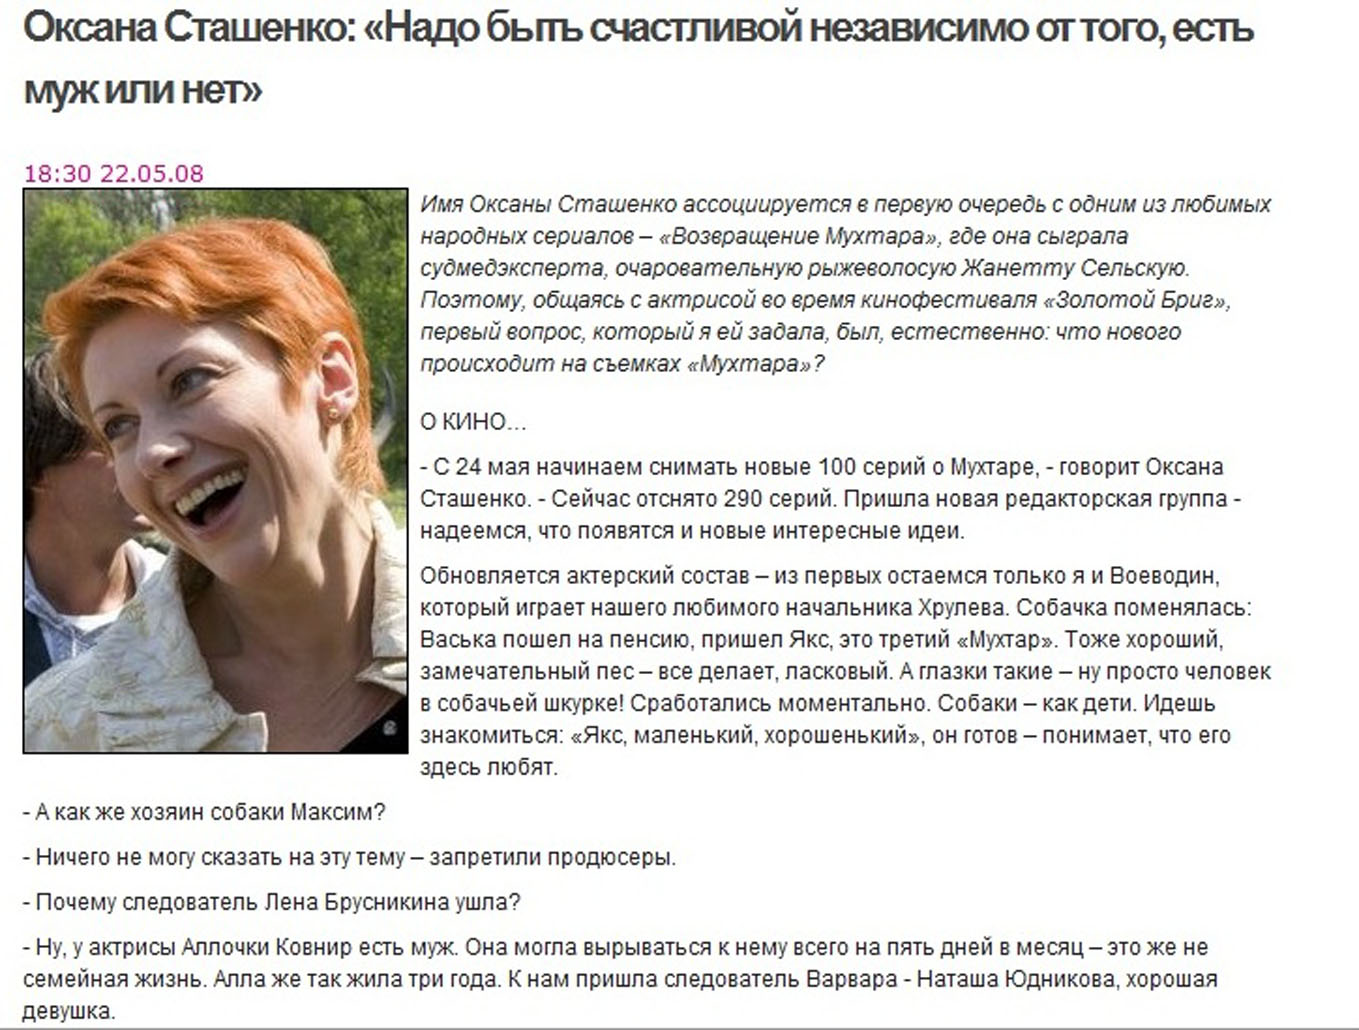 Оксана Сташенко: "Надо быть счастливой независимо от того, есть муж или нет"